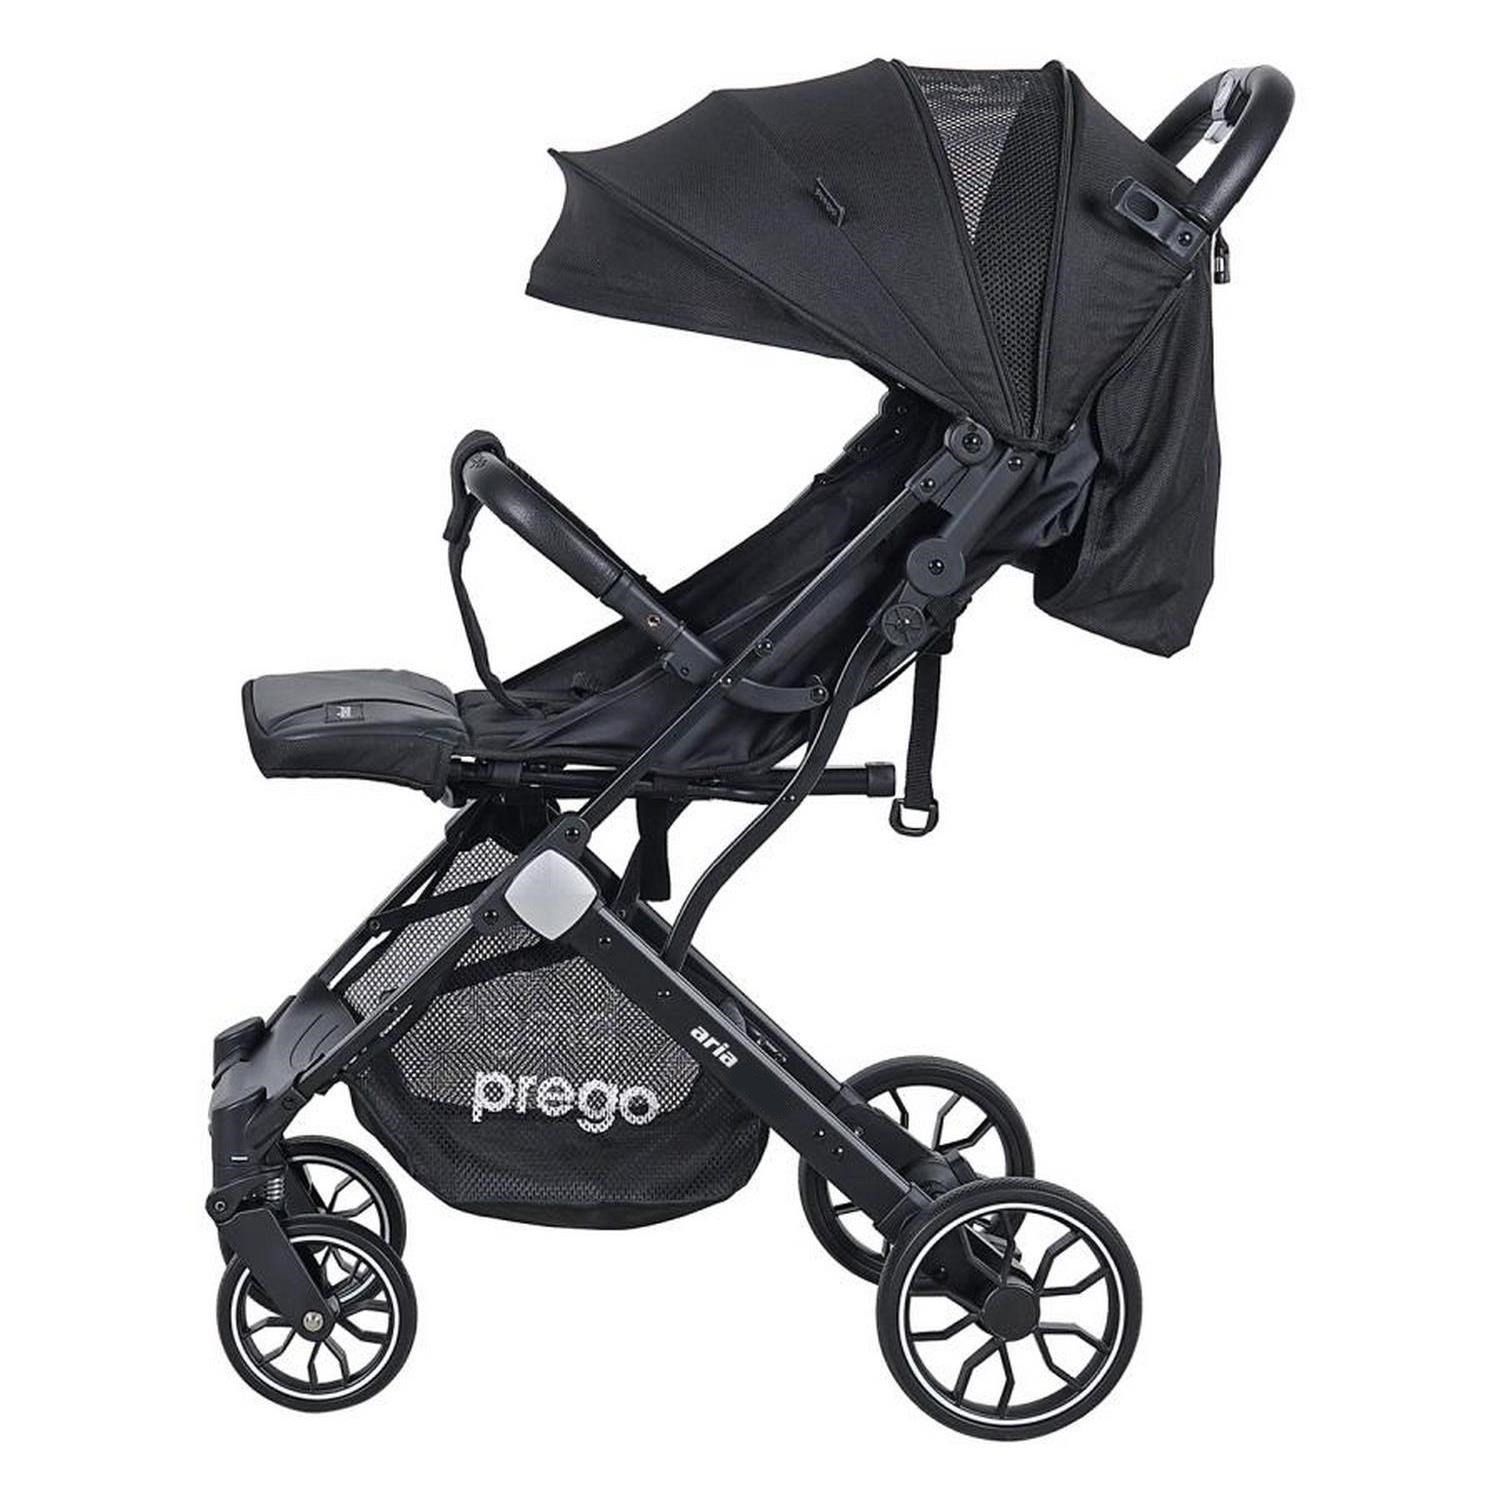 Prego Aria Plus Travel Sistem Bebek Arabası 2037 Siyah